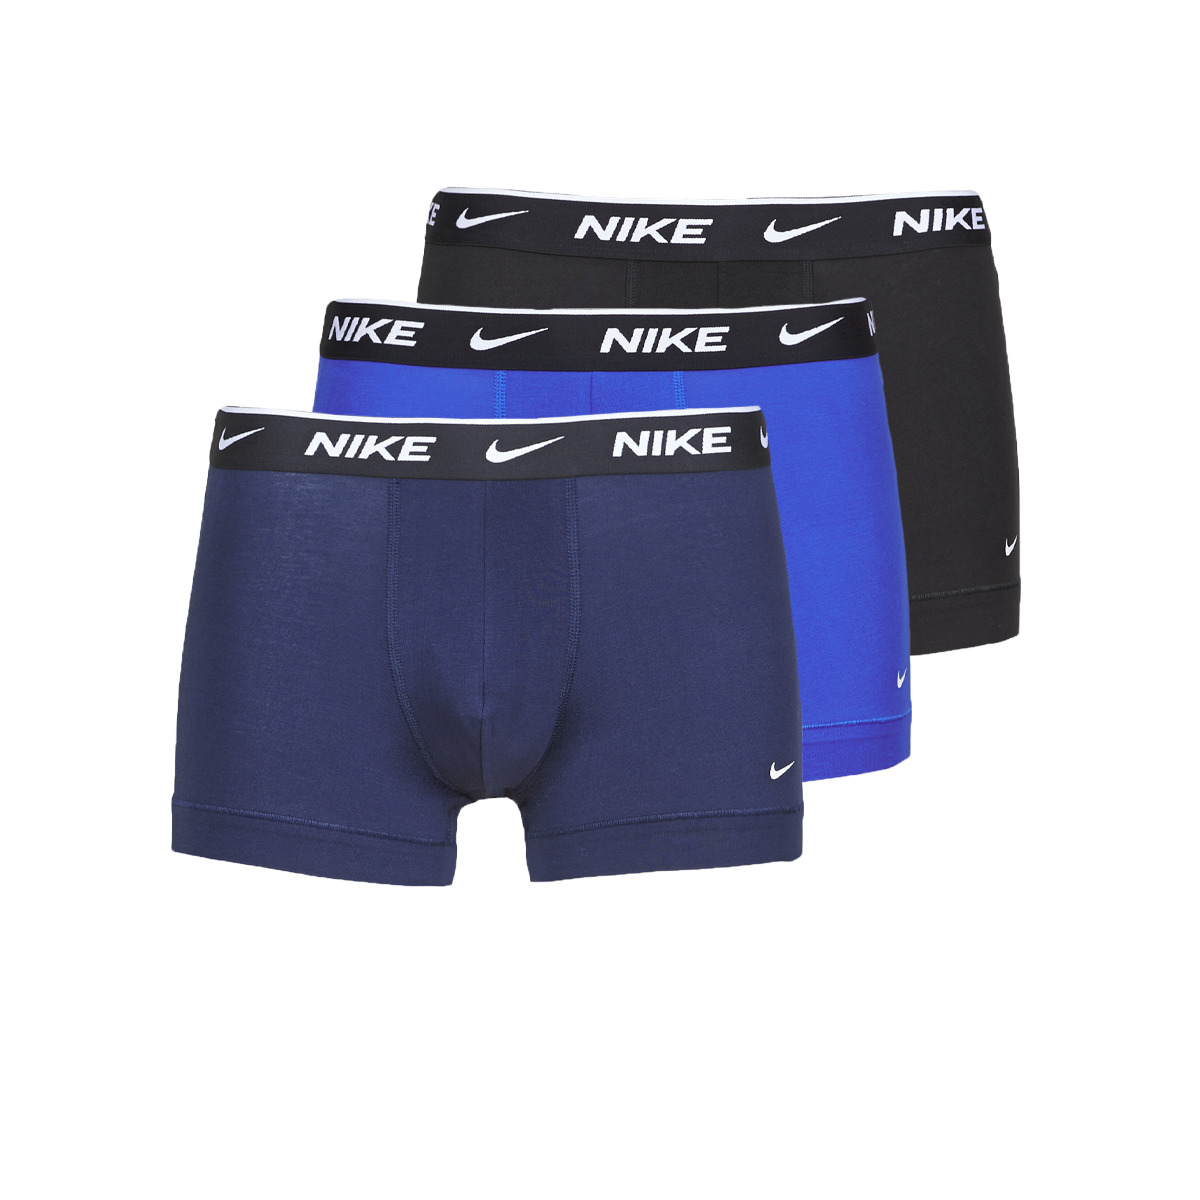 Nike Noir / Marine / Bleu EVERYDAY COTTON STRETCH X3 bYOViKVV